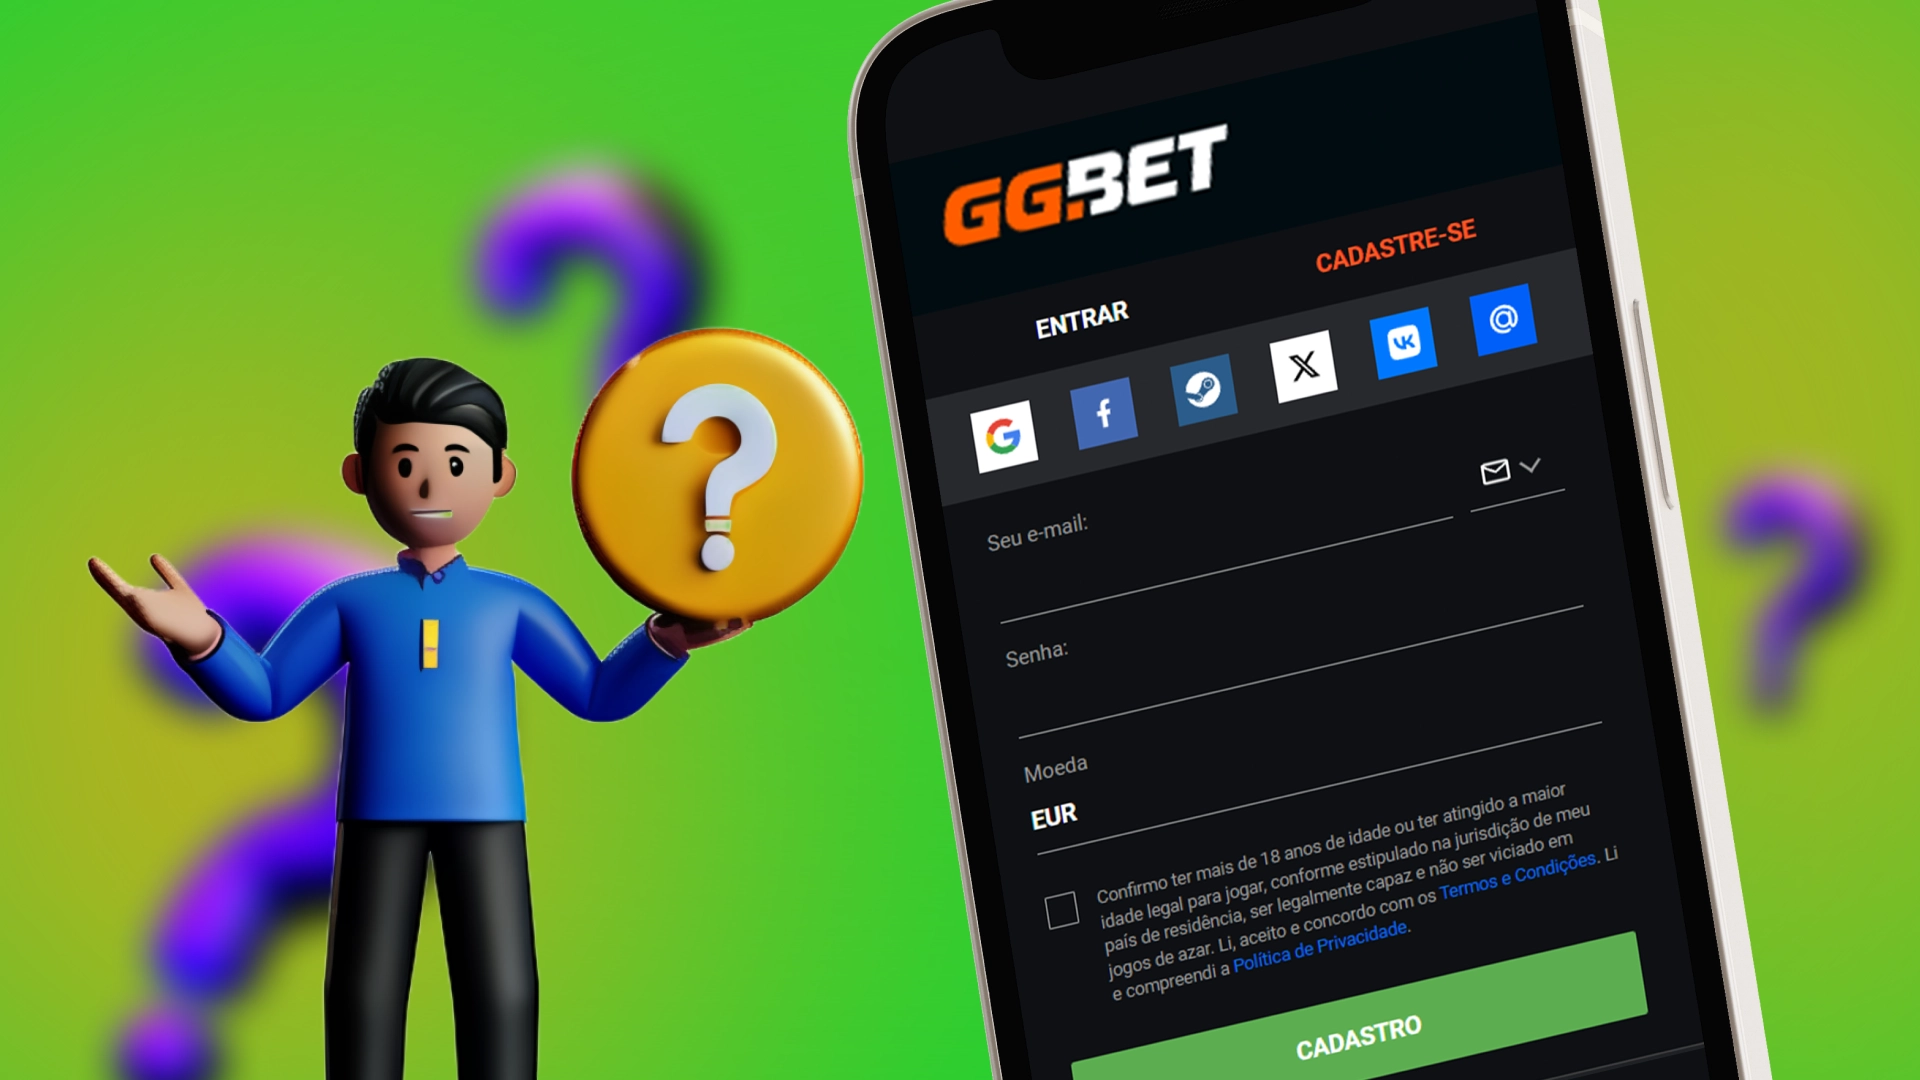 Insira os dados de sua conta usando a conta GGbet App.